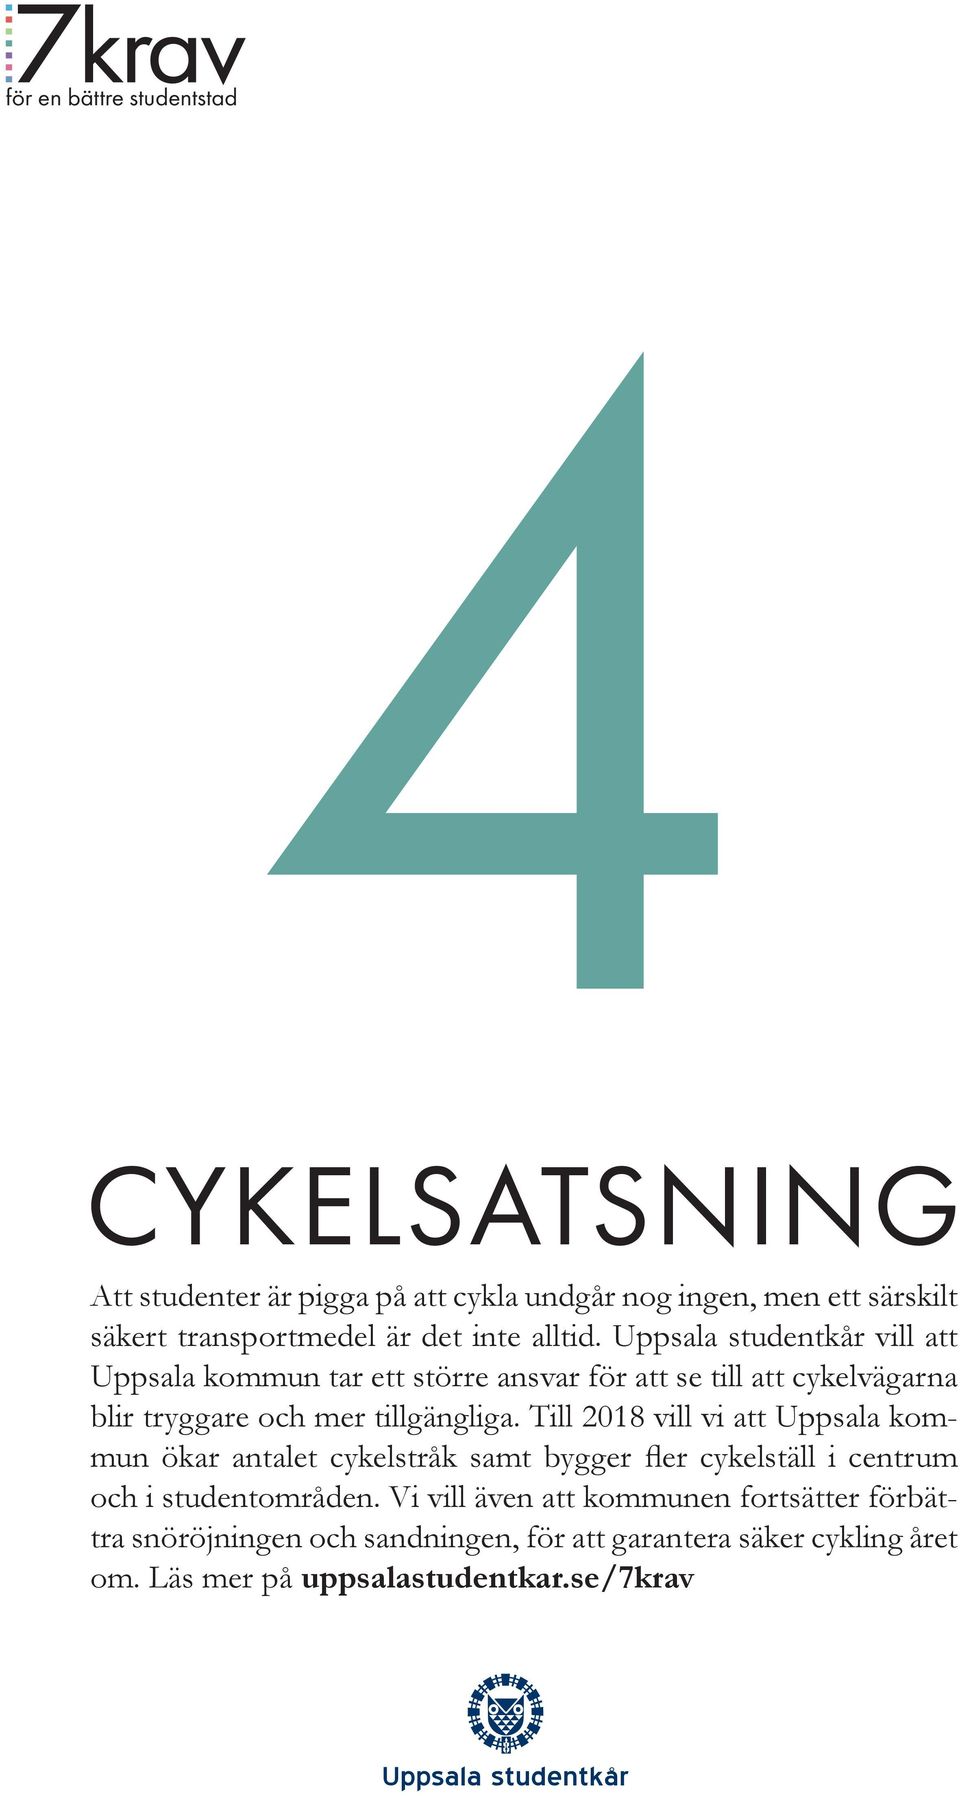 Till 2018 vill vi att Uppsala kommun ökar antalet cykelstråk samt bygger fler cykelställ i centrum och i studentområden.